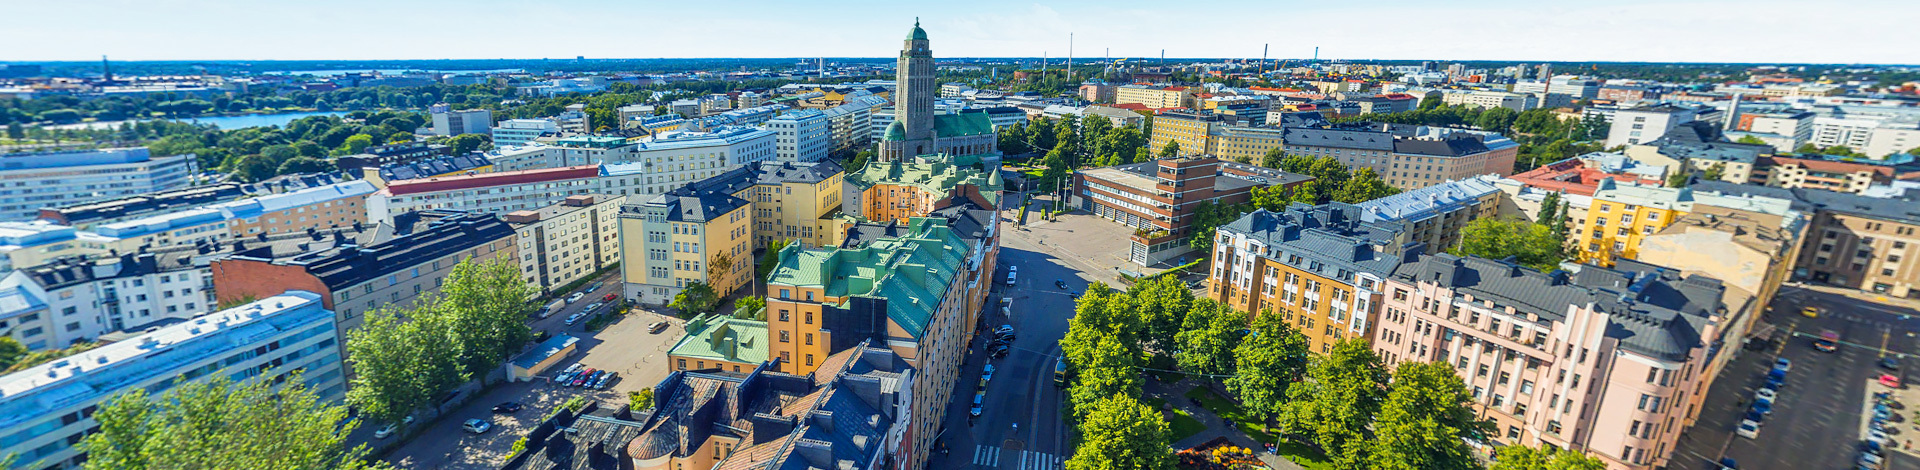 View of Kallio, Helsinki